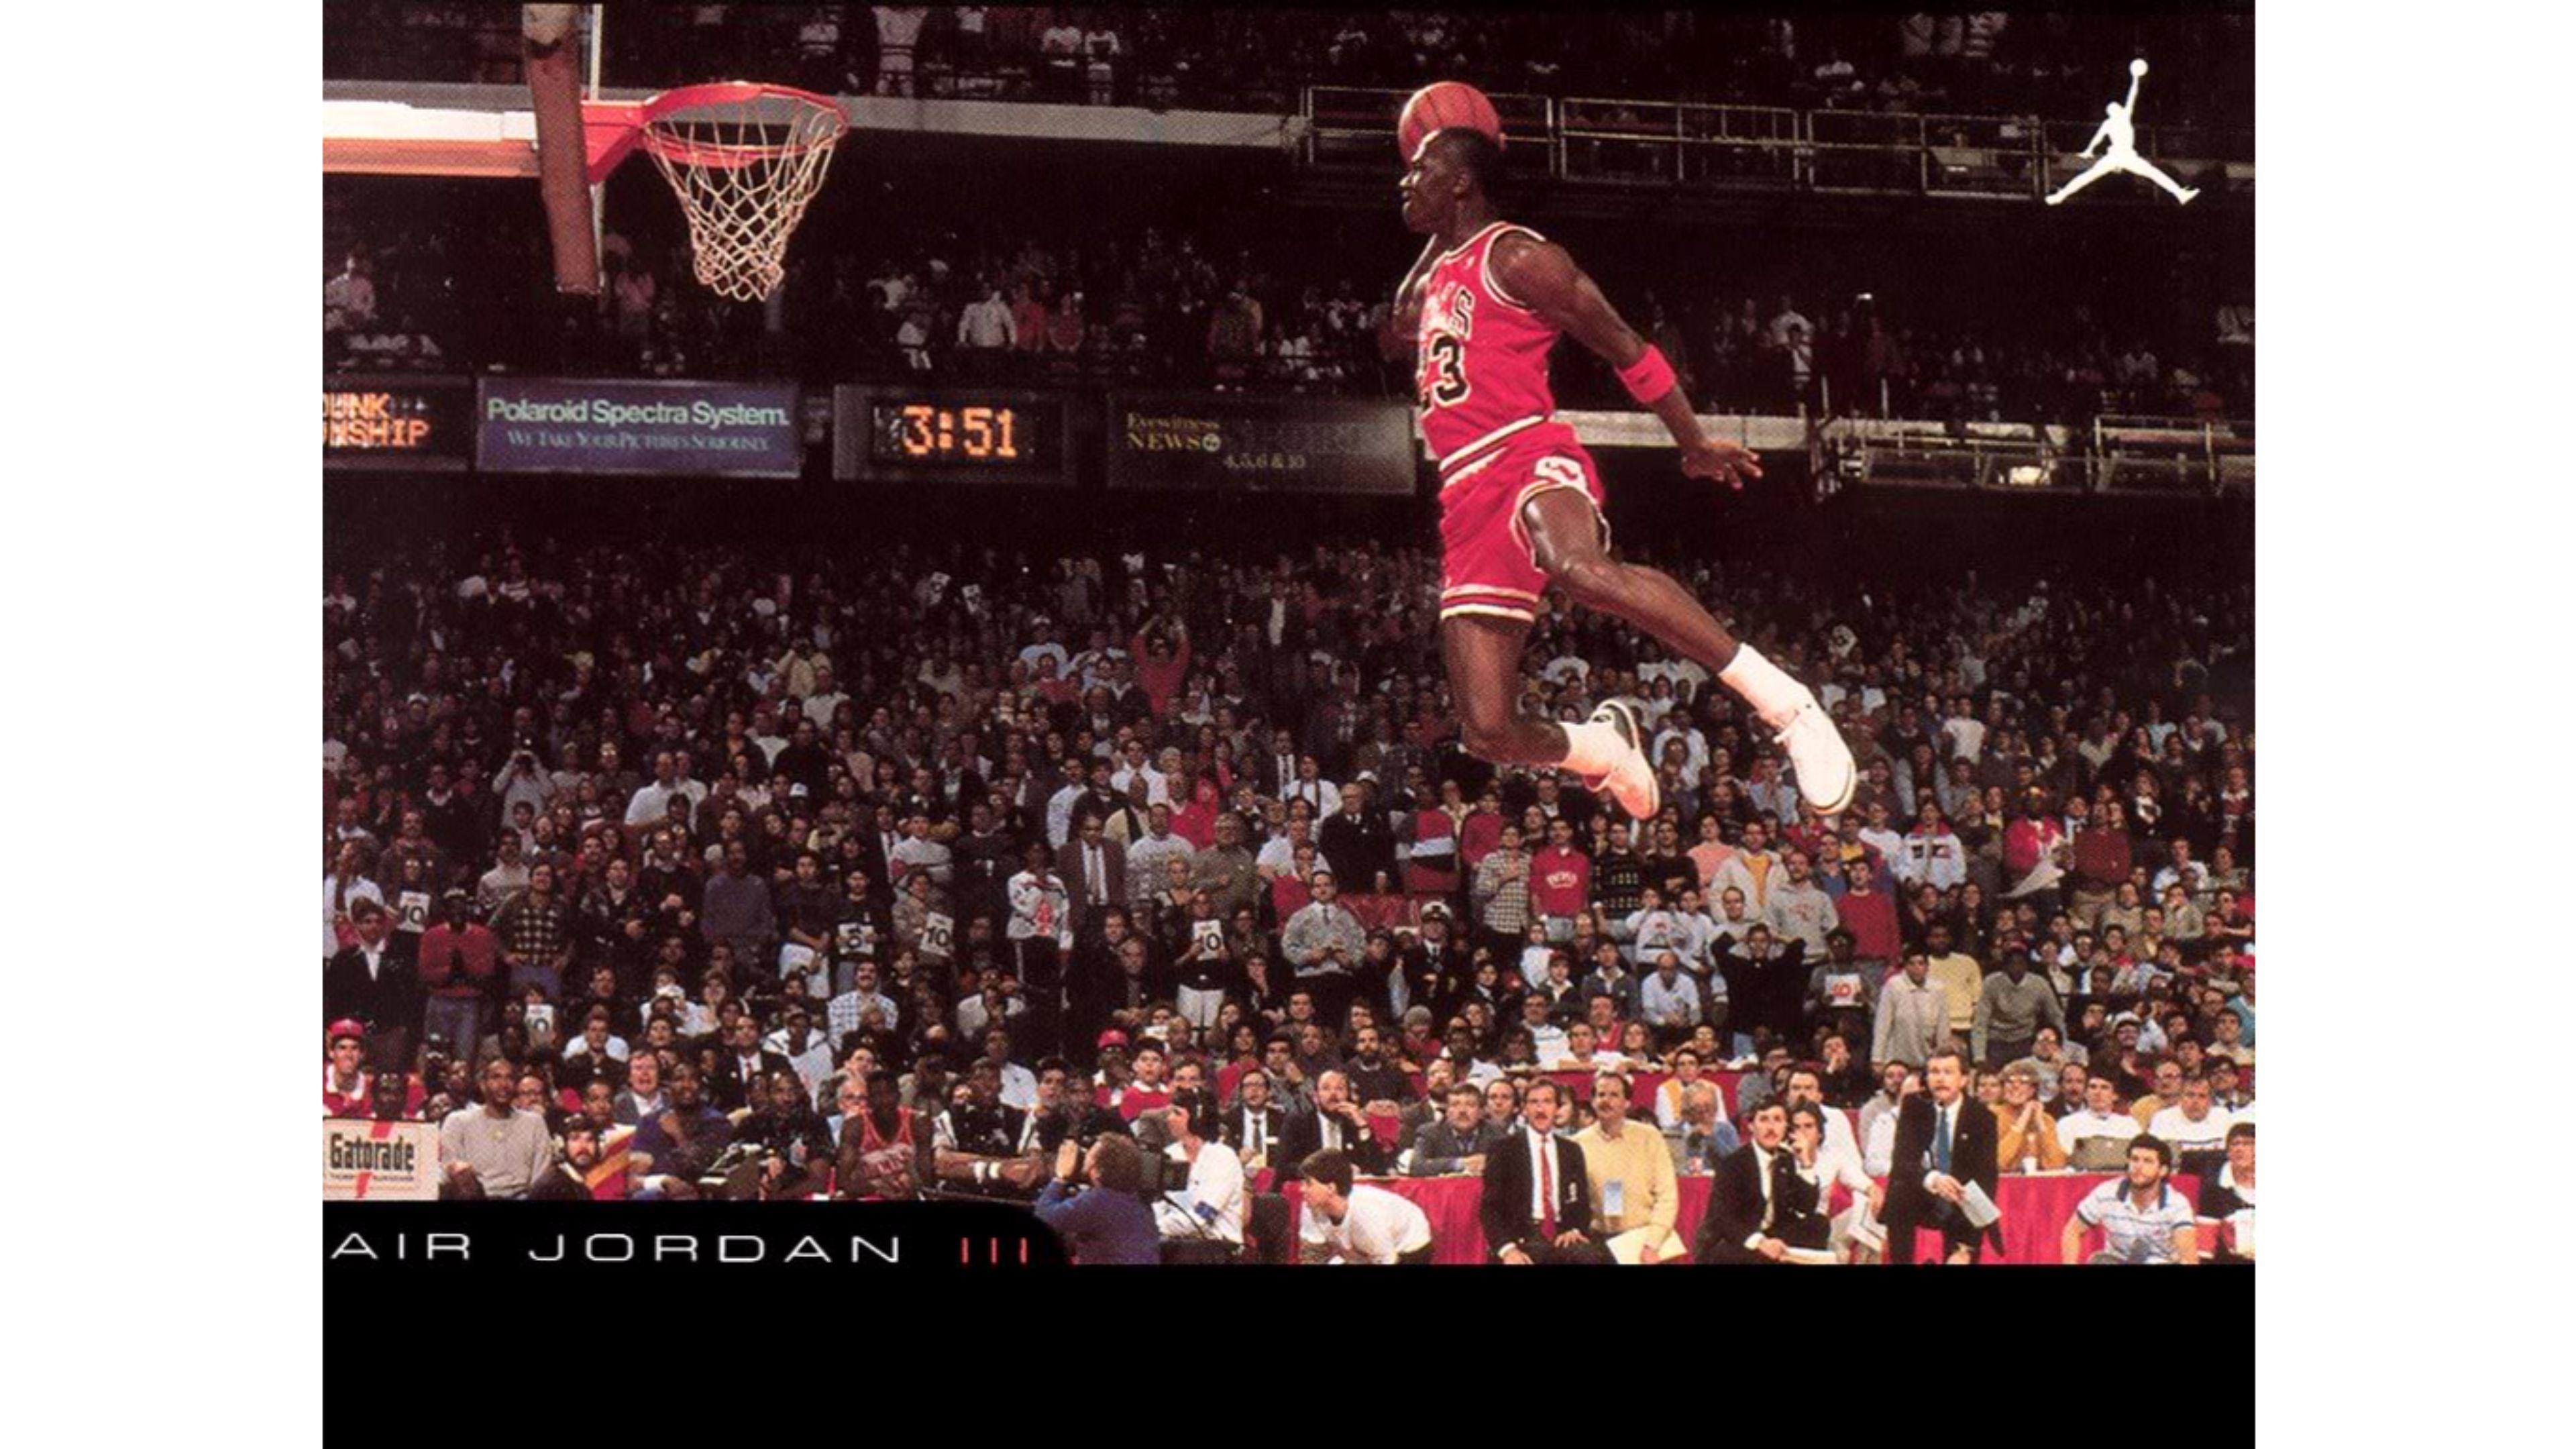 Nike Air Michael Jordan 4K Wallpaper. Free 4K Wallpaper